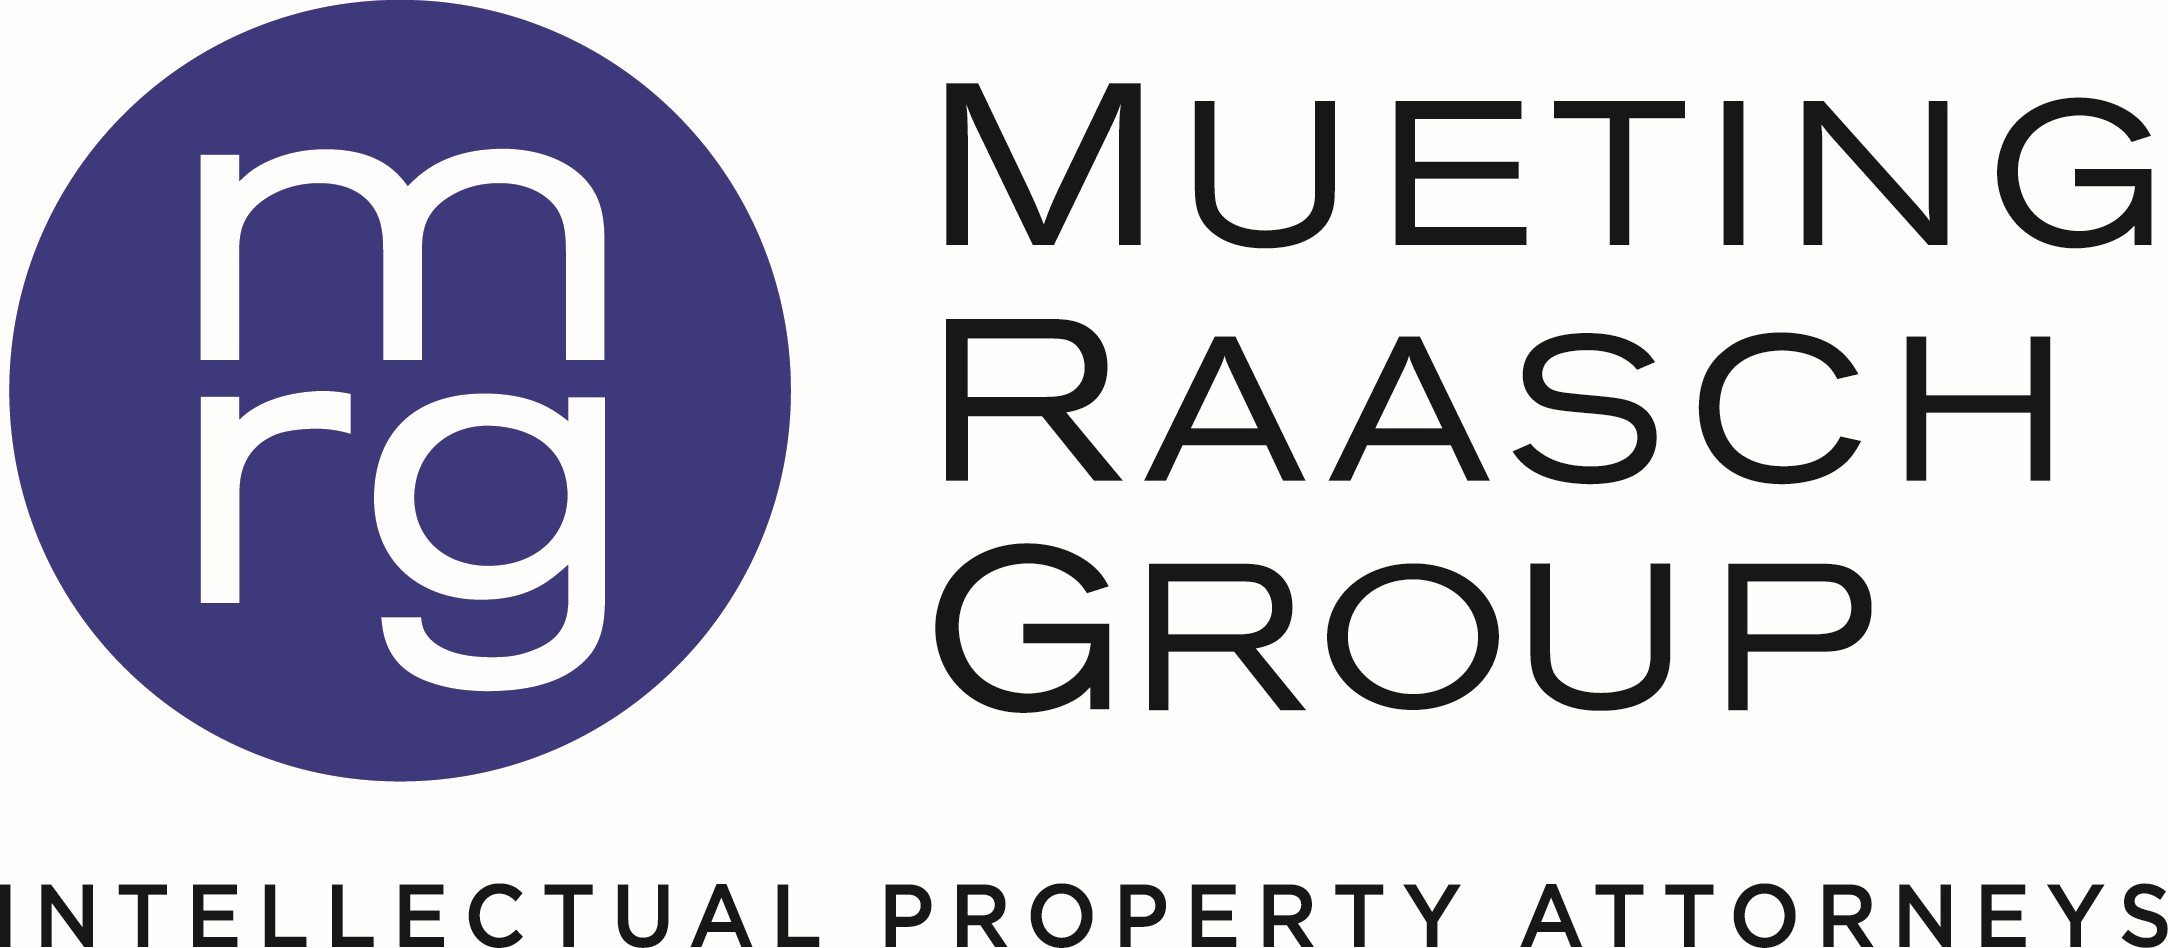 Mueting Raasch Group Logo Vertical Blue